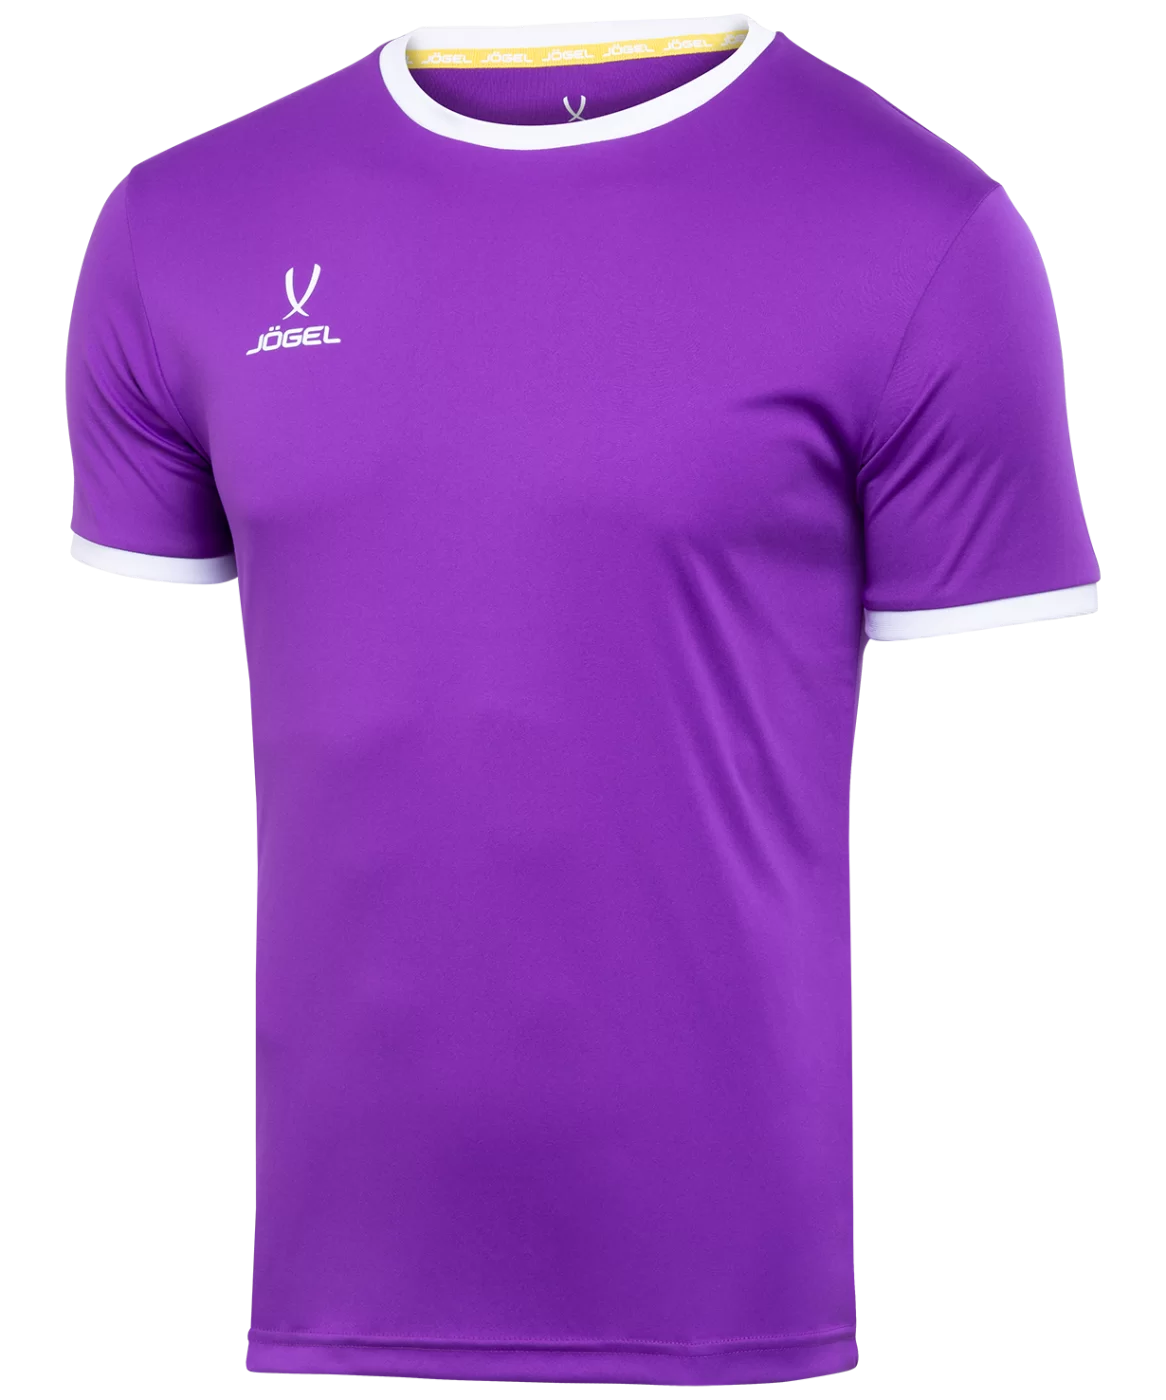 Реальное фото Футболка футбольная CAMP Origin, фиолетовый/белый Jögel от магазина Спортев